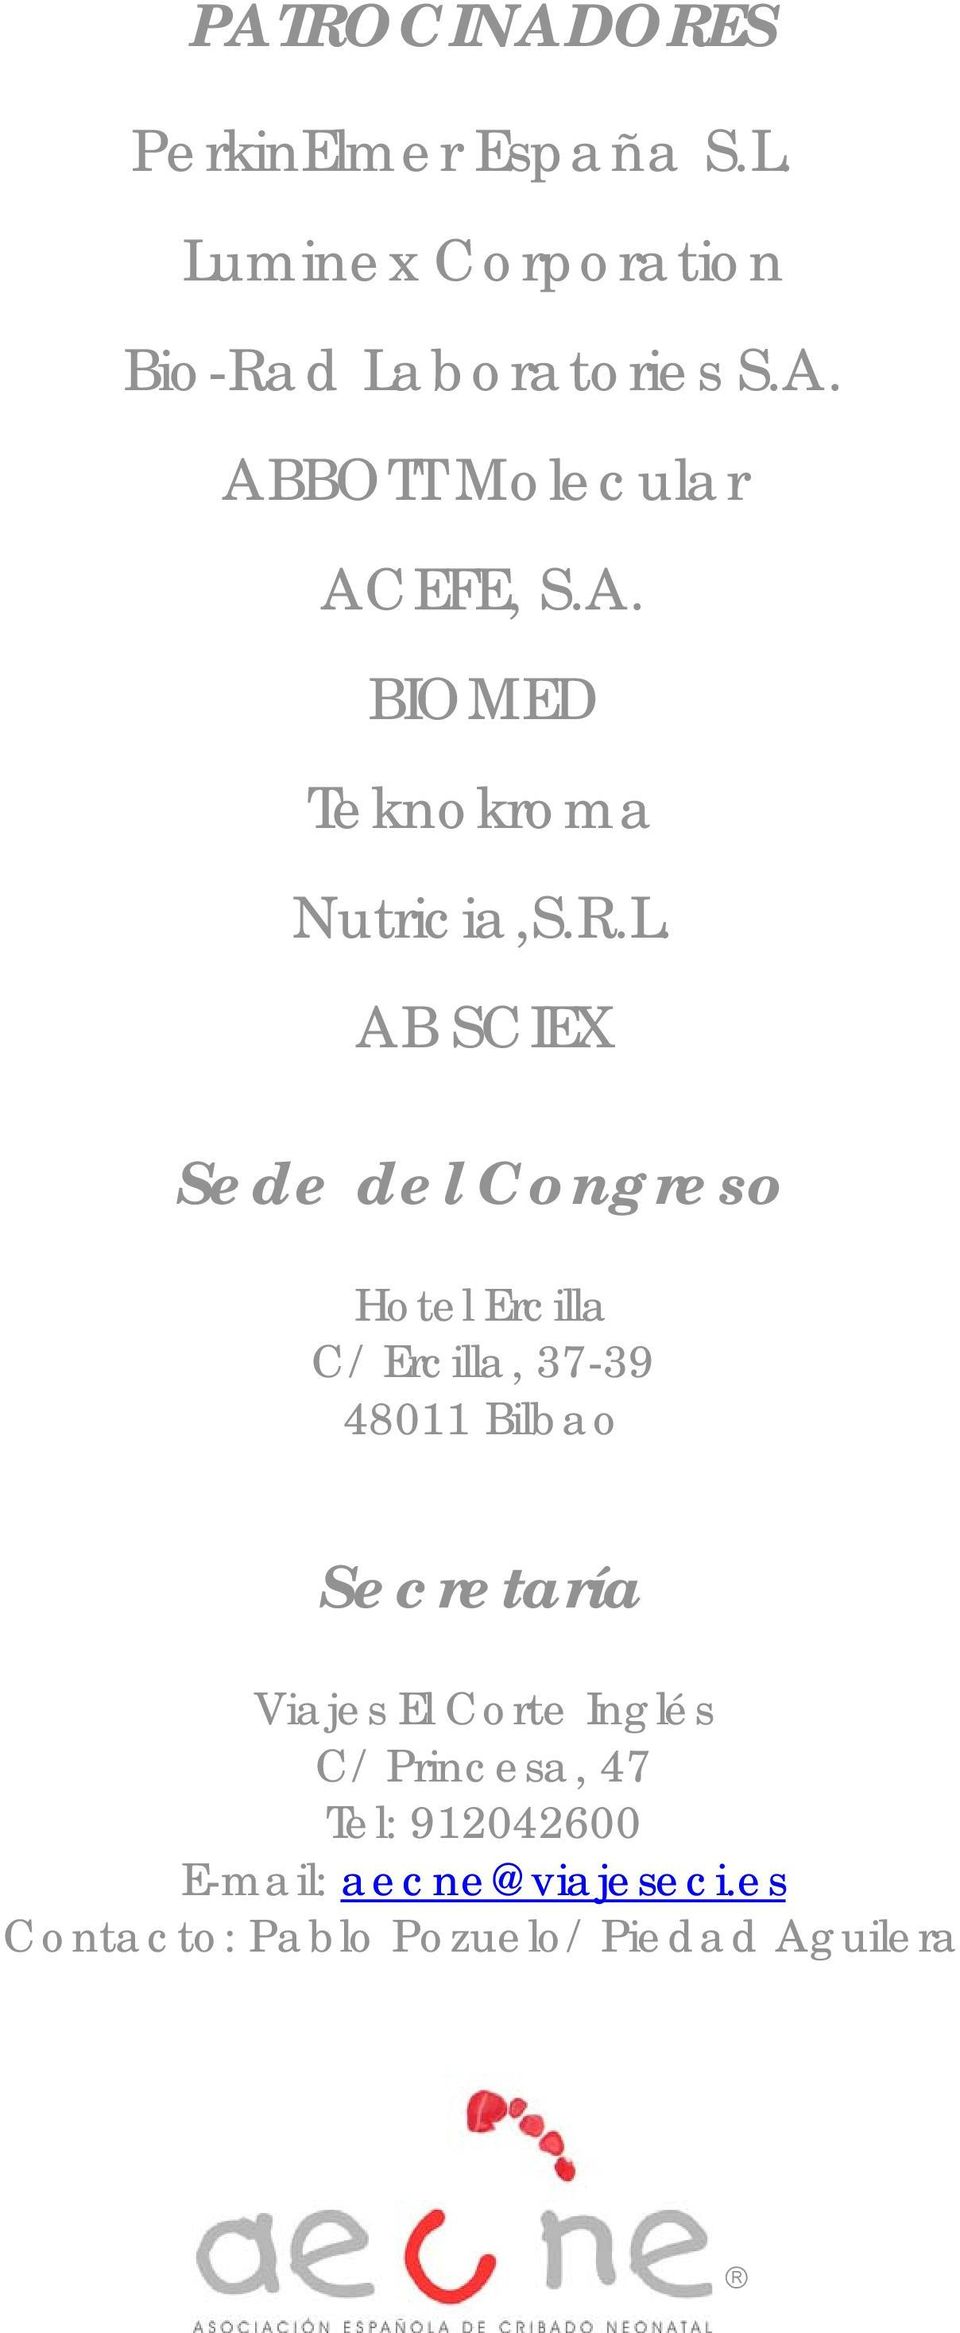 AB SCIEX Sede del Congreso Hotel Ercilla C/ Ercilla, 37-39 48011 Bilbao Secretaría